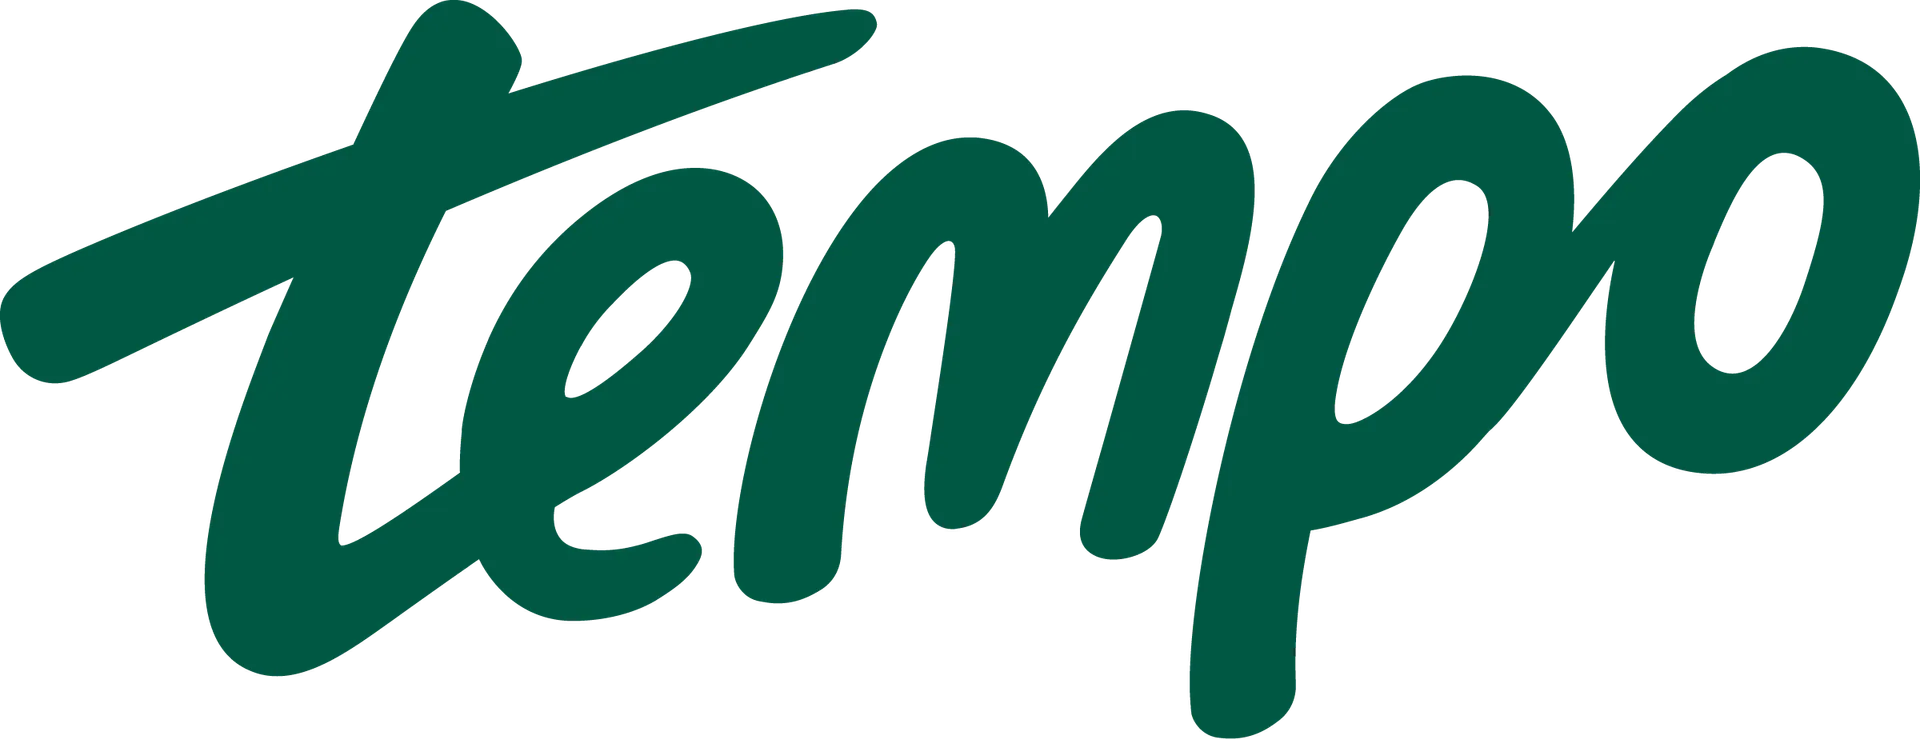 TEMPO logo